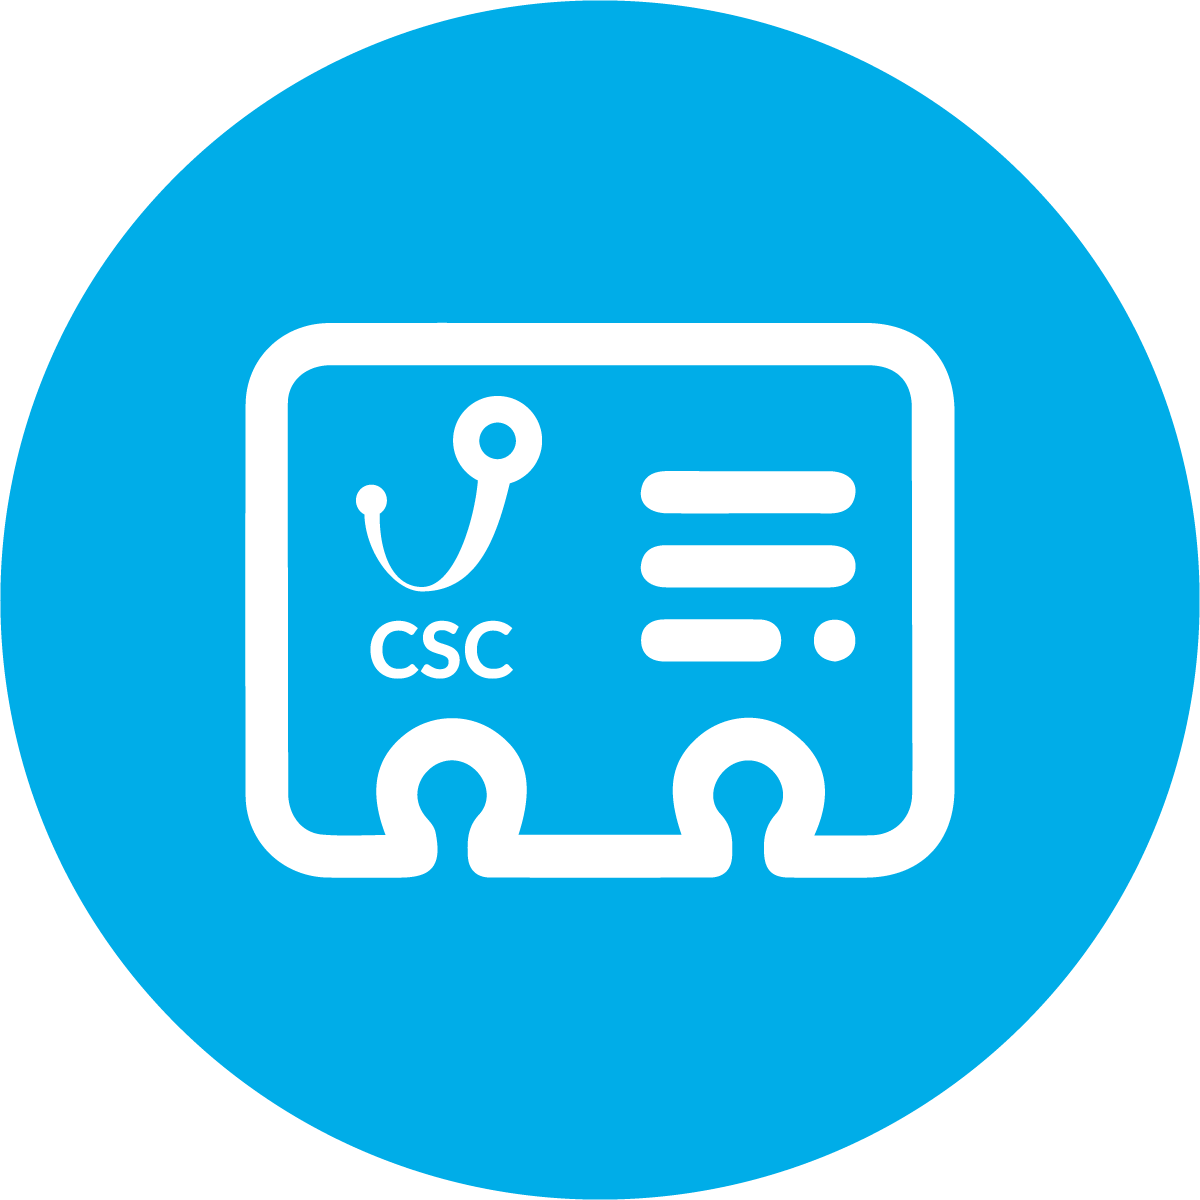 Contact CSC